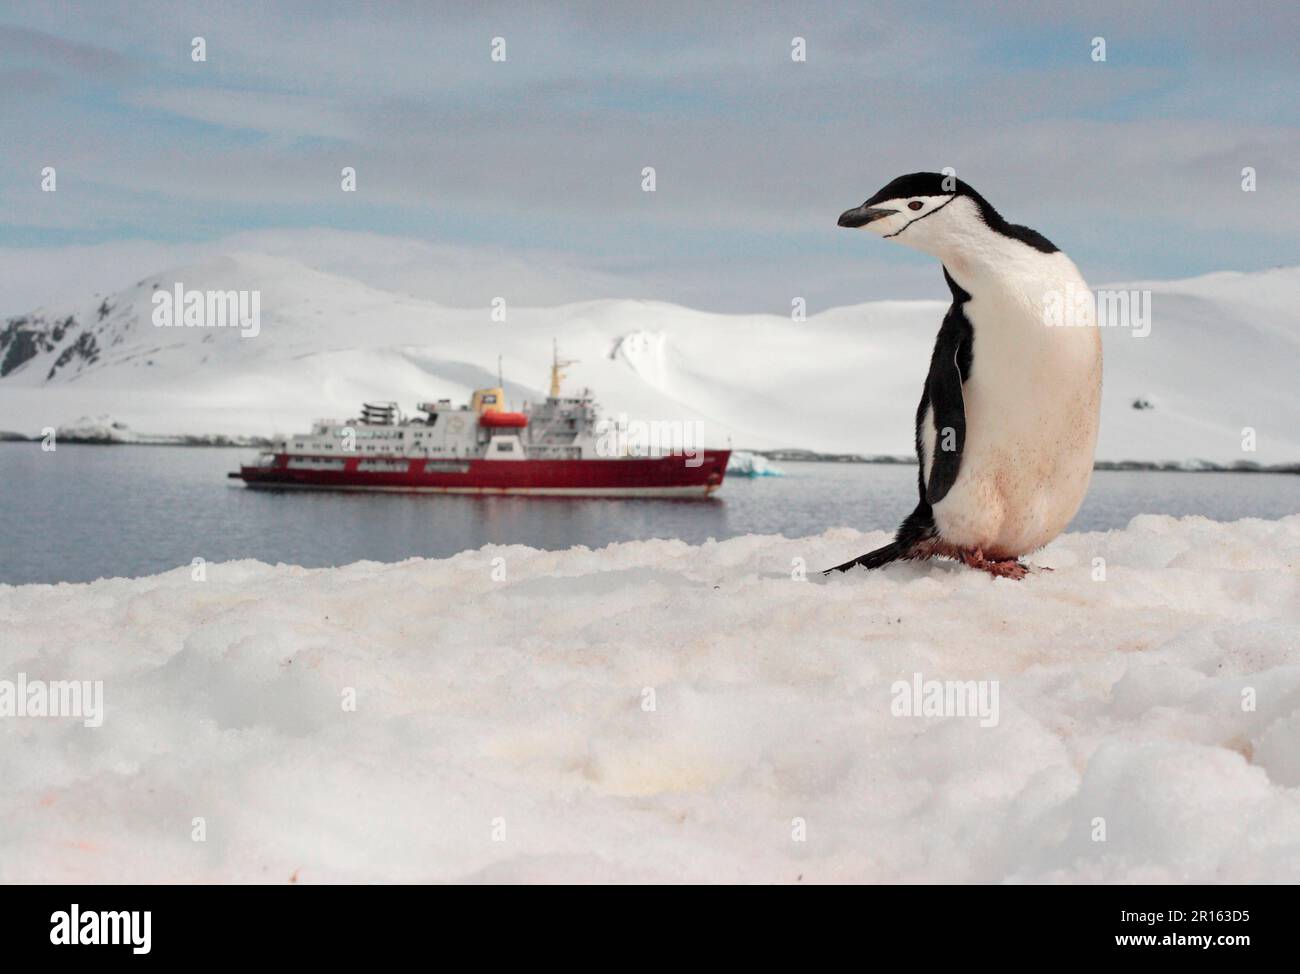 Chinstrap-Pinguin (Pygoscelis antarktis), Erwachsener, auf Schnee stehend, mit Touristenschiff im Hintergrund, Antarktis-Halbinsel, Antarktis Stockfoto